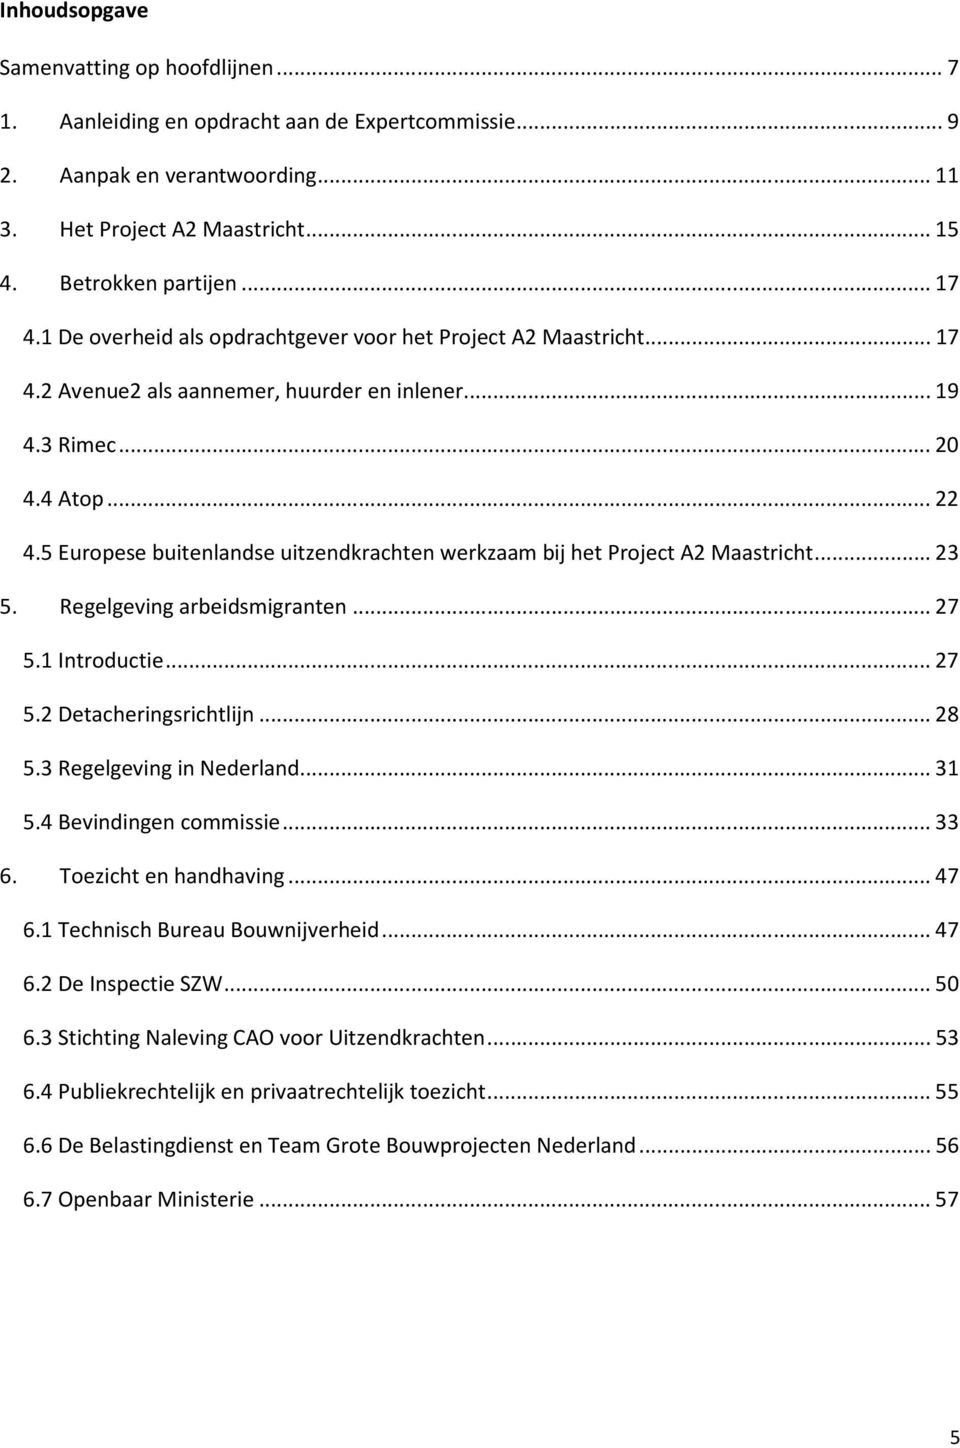 5 Europese buitenlandse uitzendkrachten werkzaam bij het Project A2 Maastricht...23 5. Regelgeving arbeidsmigranten...27 5.1 Introductie...27 5.2 Detacheringsrichtlijn...28 5.